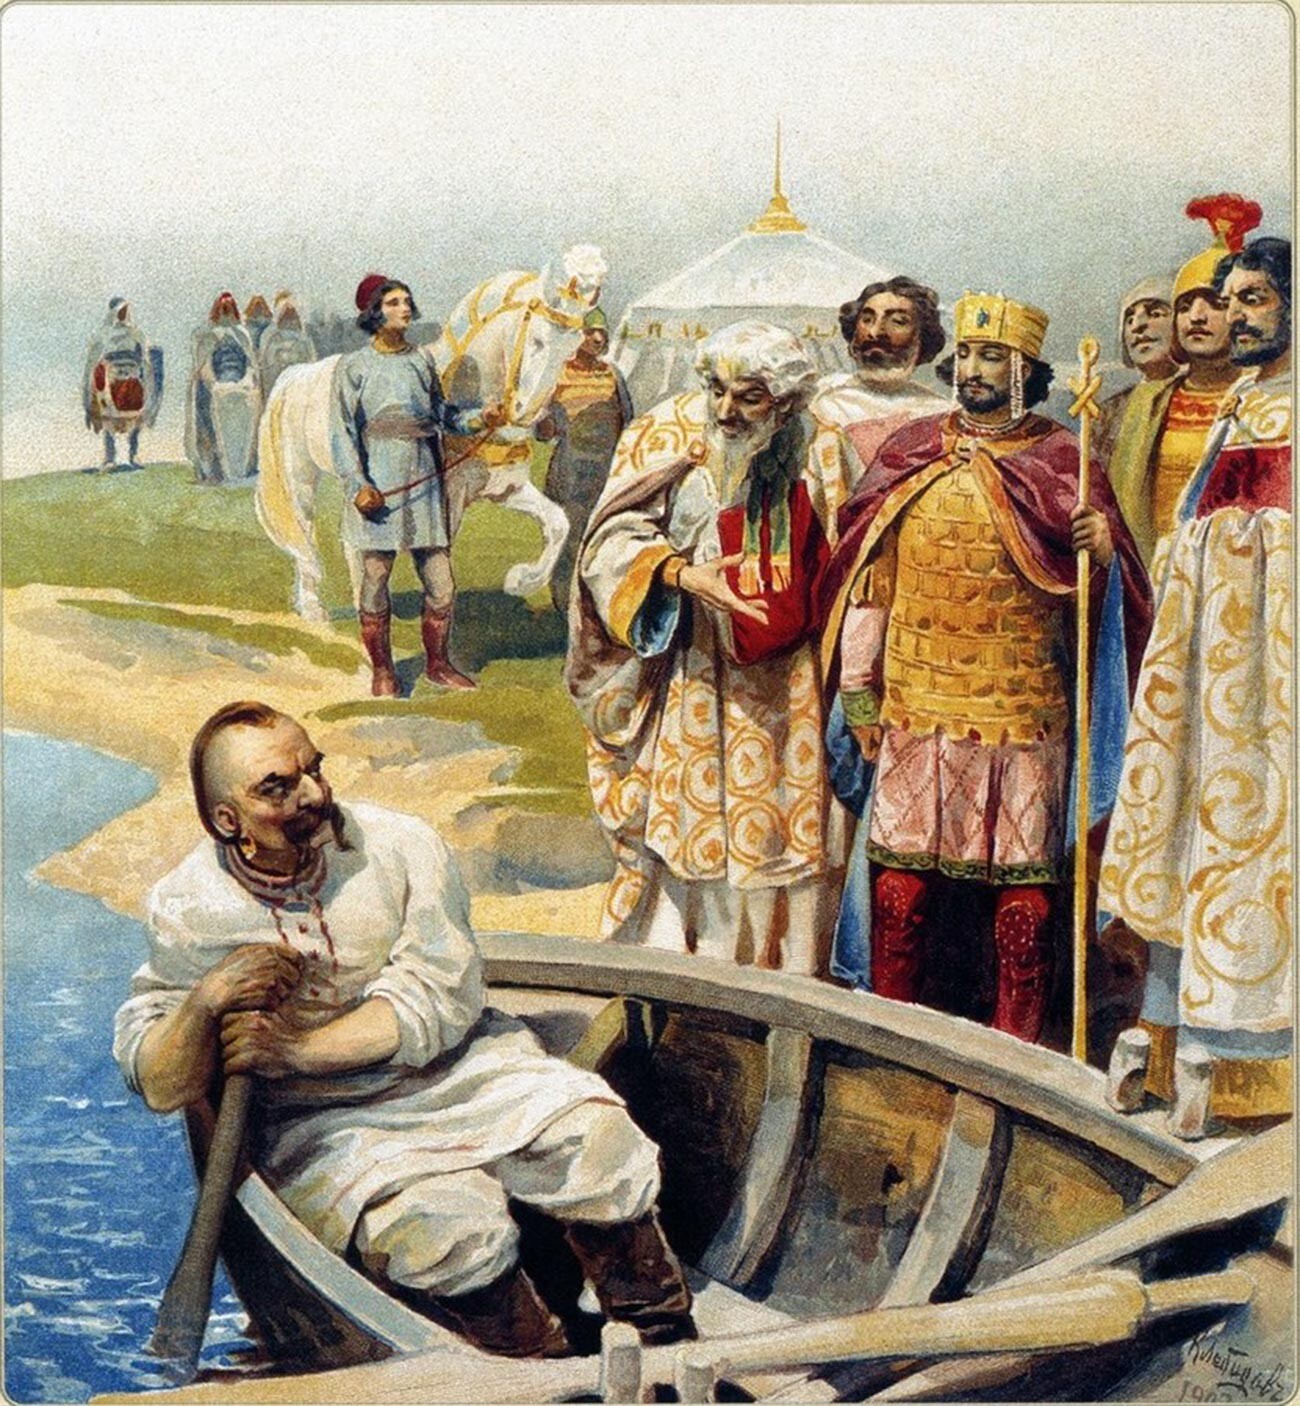 Das Treffen von Swjatoslaw mit dem byzantinischen Kaiser Tzimiskes am Ufer der Donau. Der Sohn von Igor und Olga, Fürst Swjatoslaw, verbrachte sein ganzes Leben mit militärischen Einsätzen. Zu seinen Hauptgegnern gehörten die nomadischen Petschengen, die Bulgaren und auch das byzantinische Reich. 